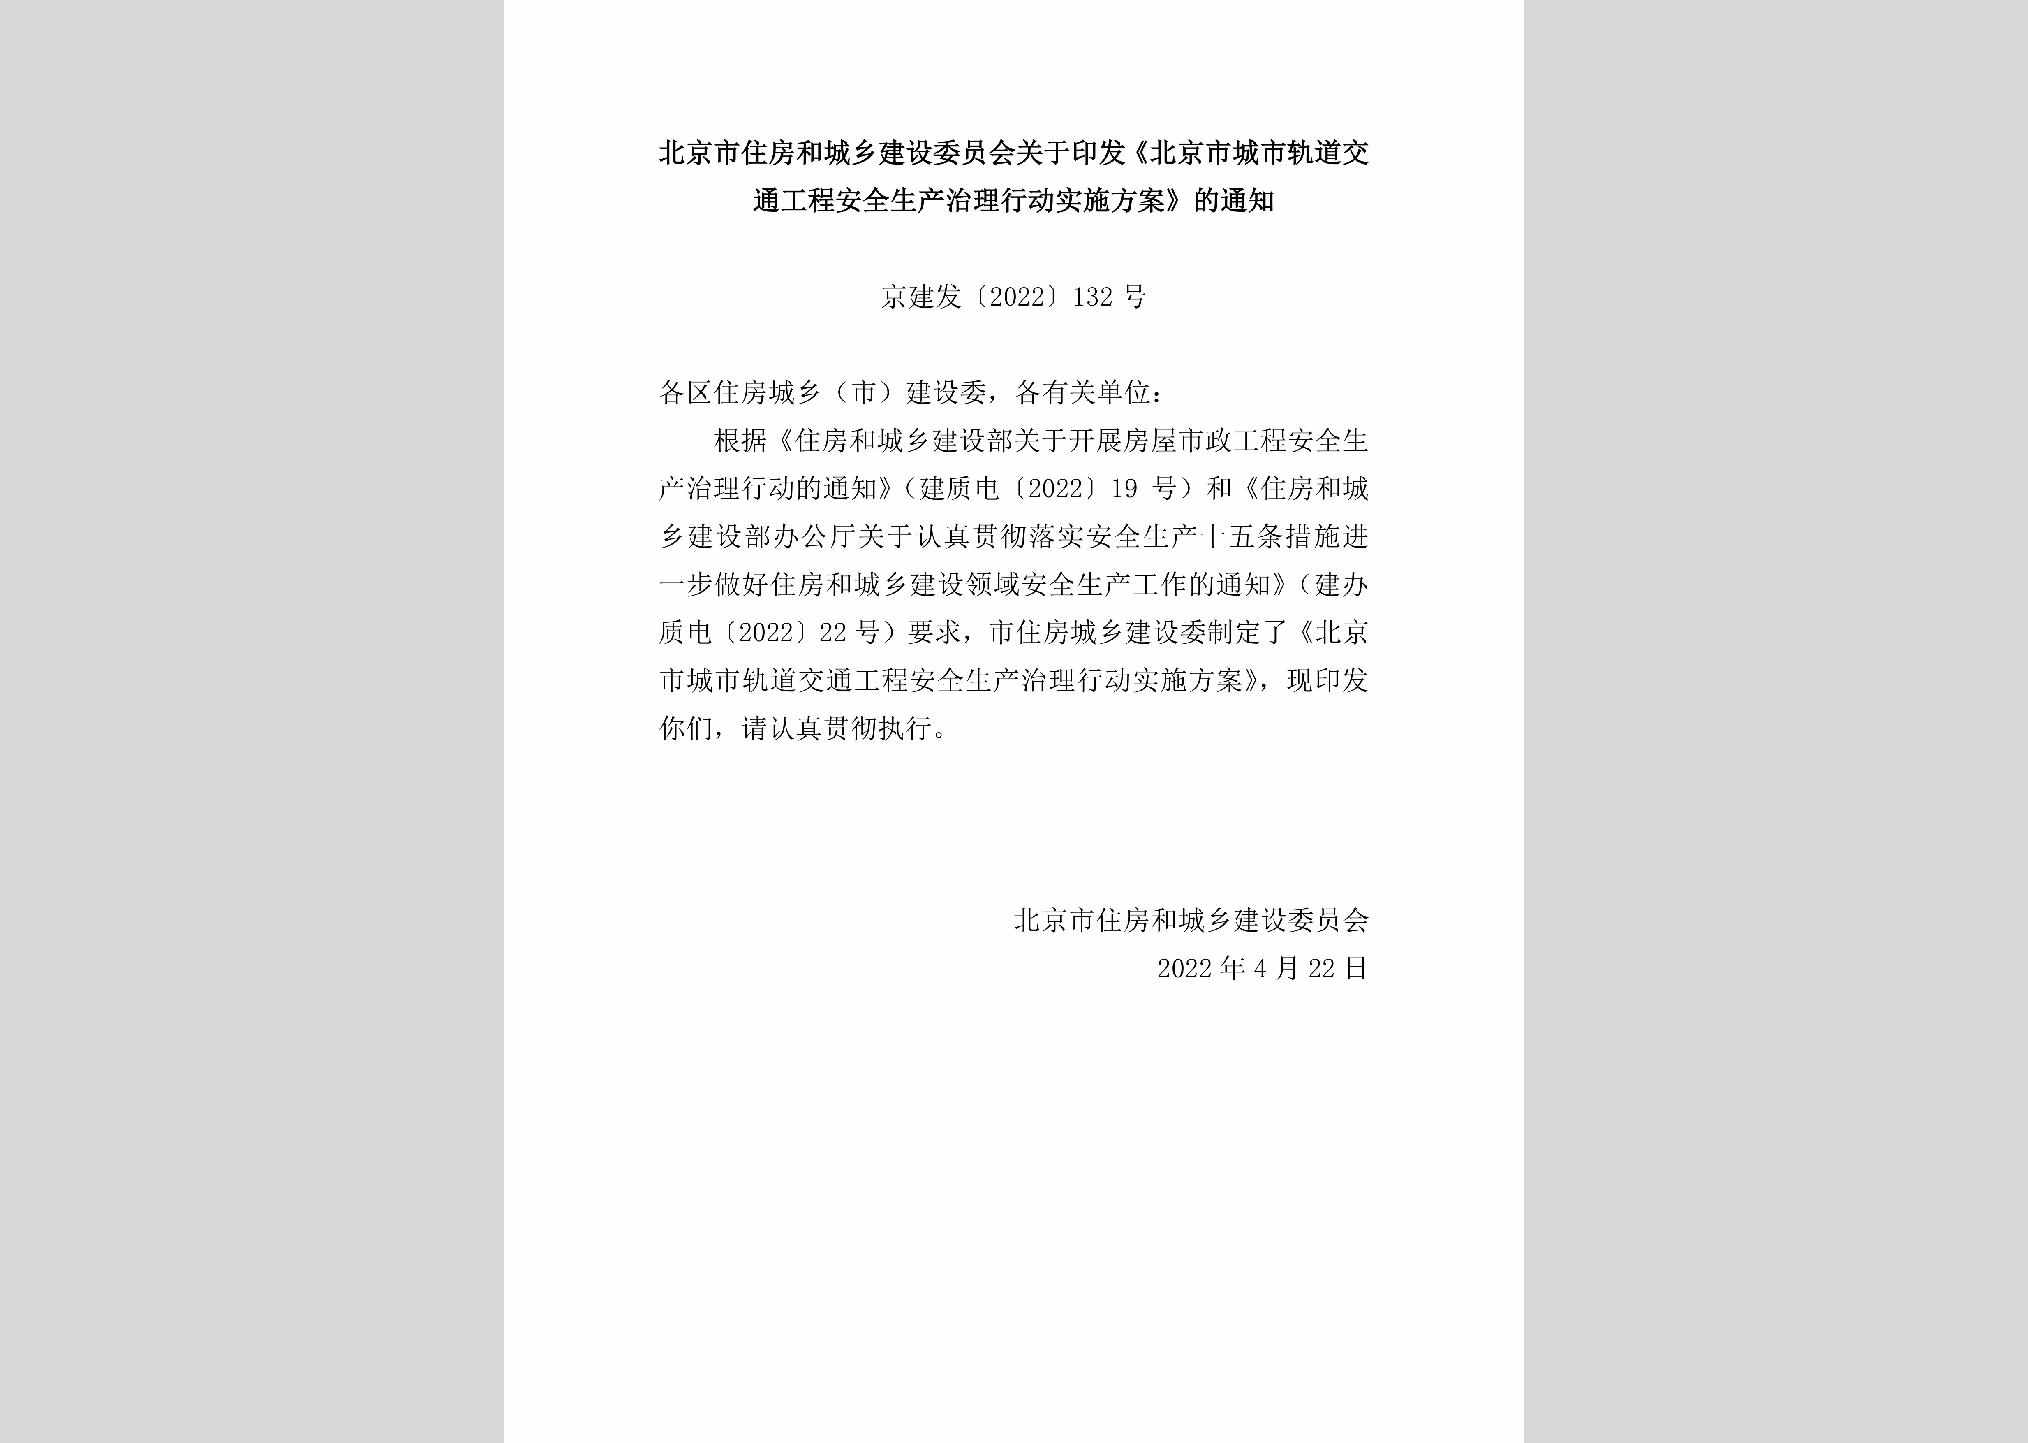 京建发[2022]132号：北京市住房和城乡建设委员会关于印发《北京市城市轨道交通工程安全生产治理行动实施方案》的通知